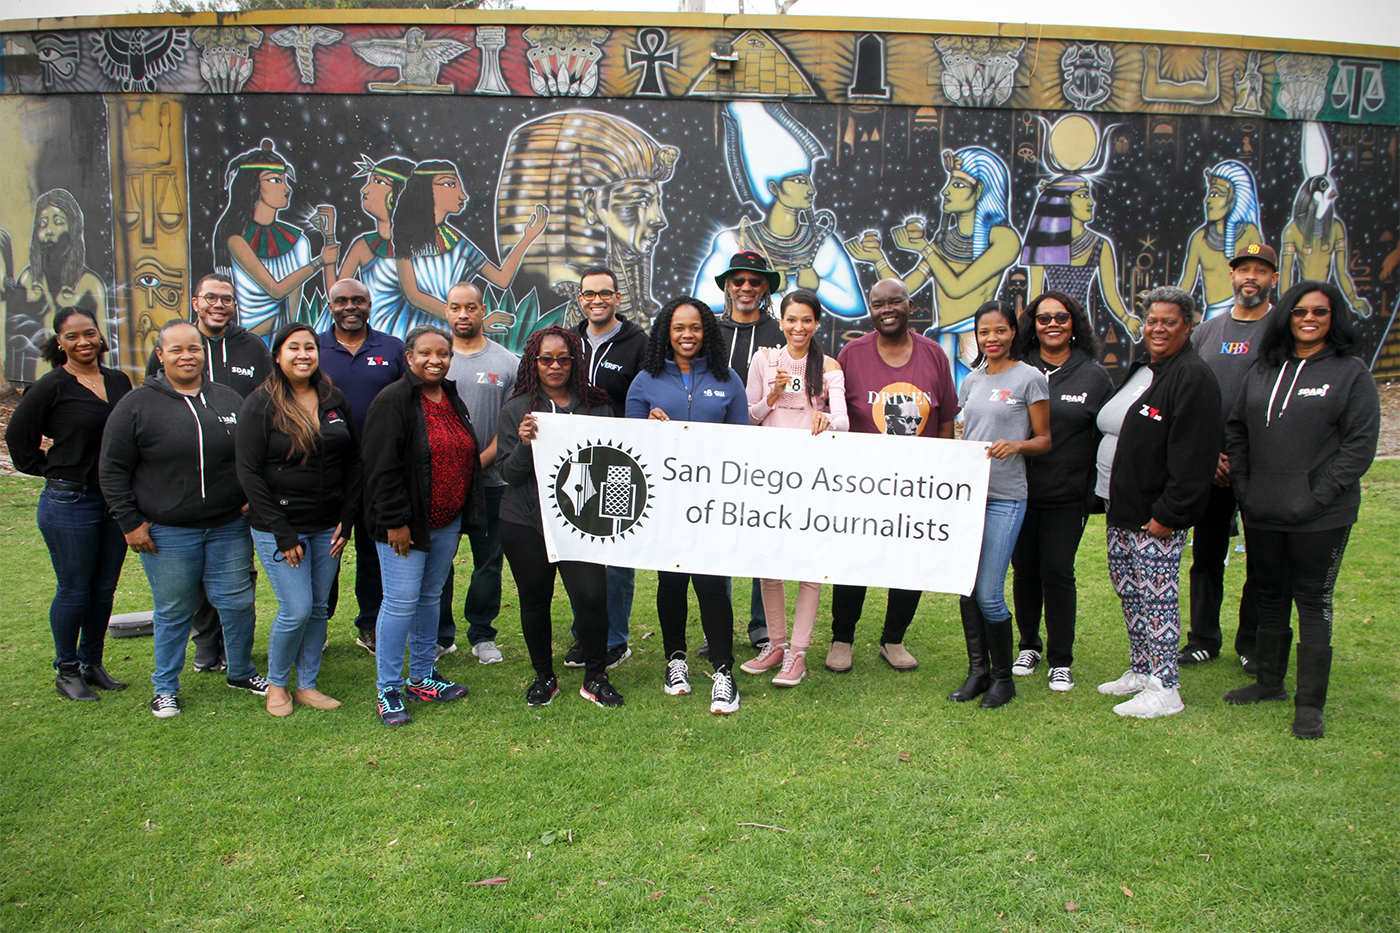 SDABJ: Dedicated to Building Community, Improving Coverage of Black San Diegans